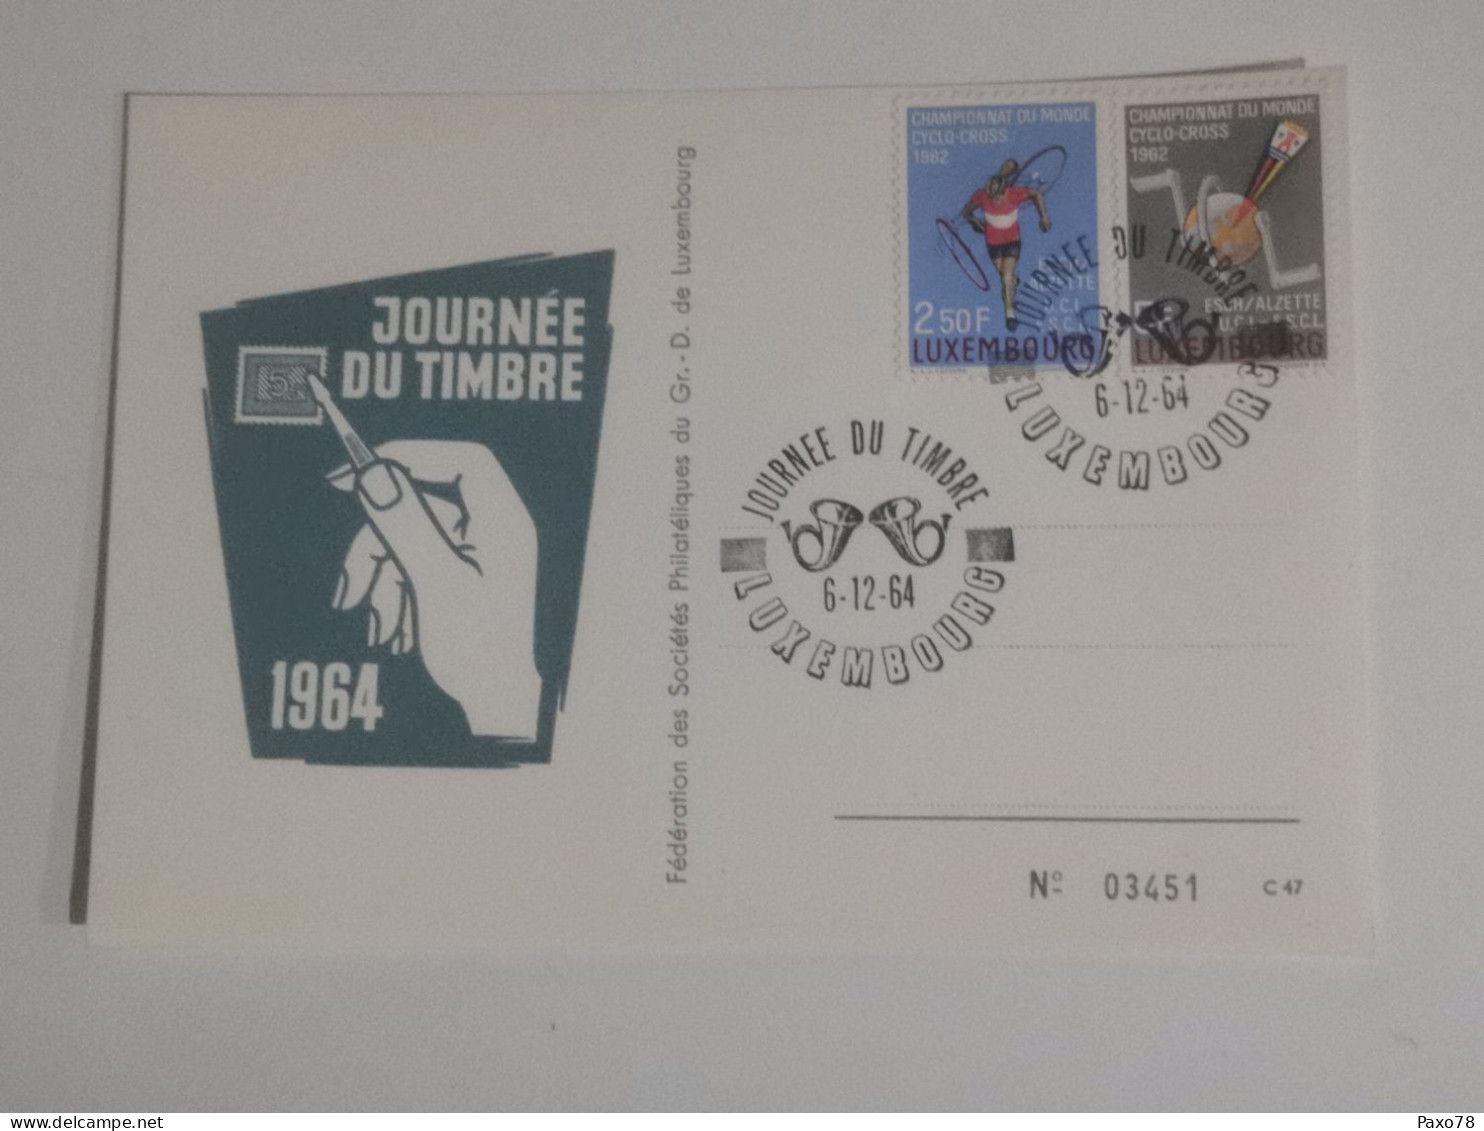 Journée Du Timbre 1964 - Commemoration Cards